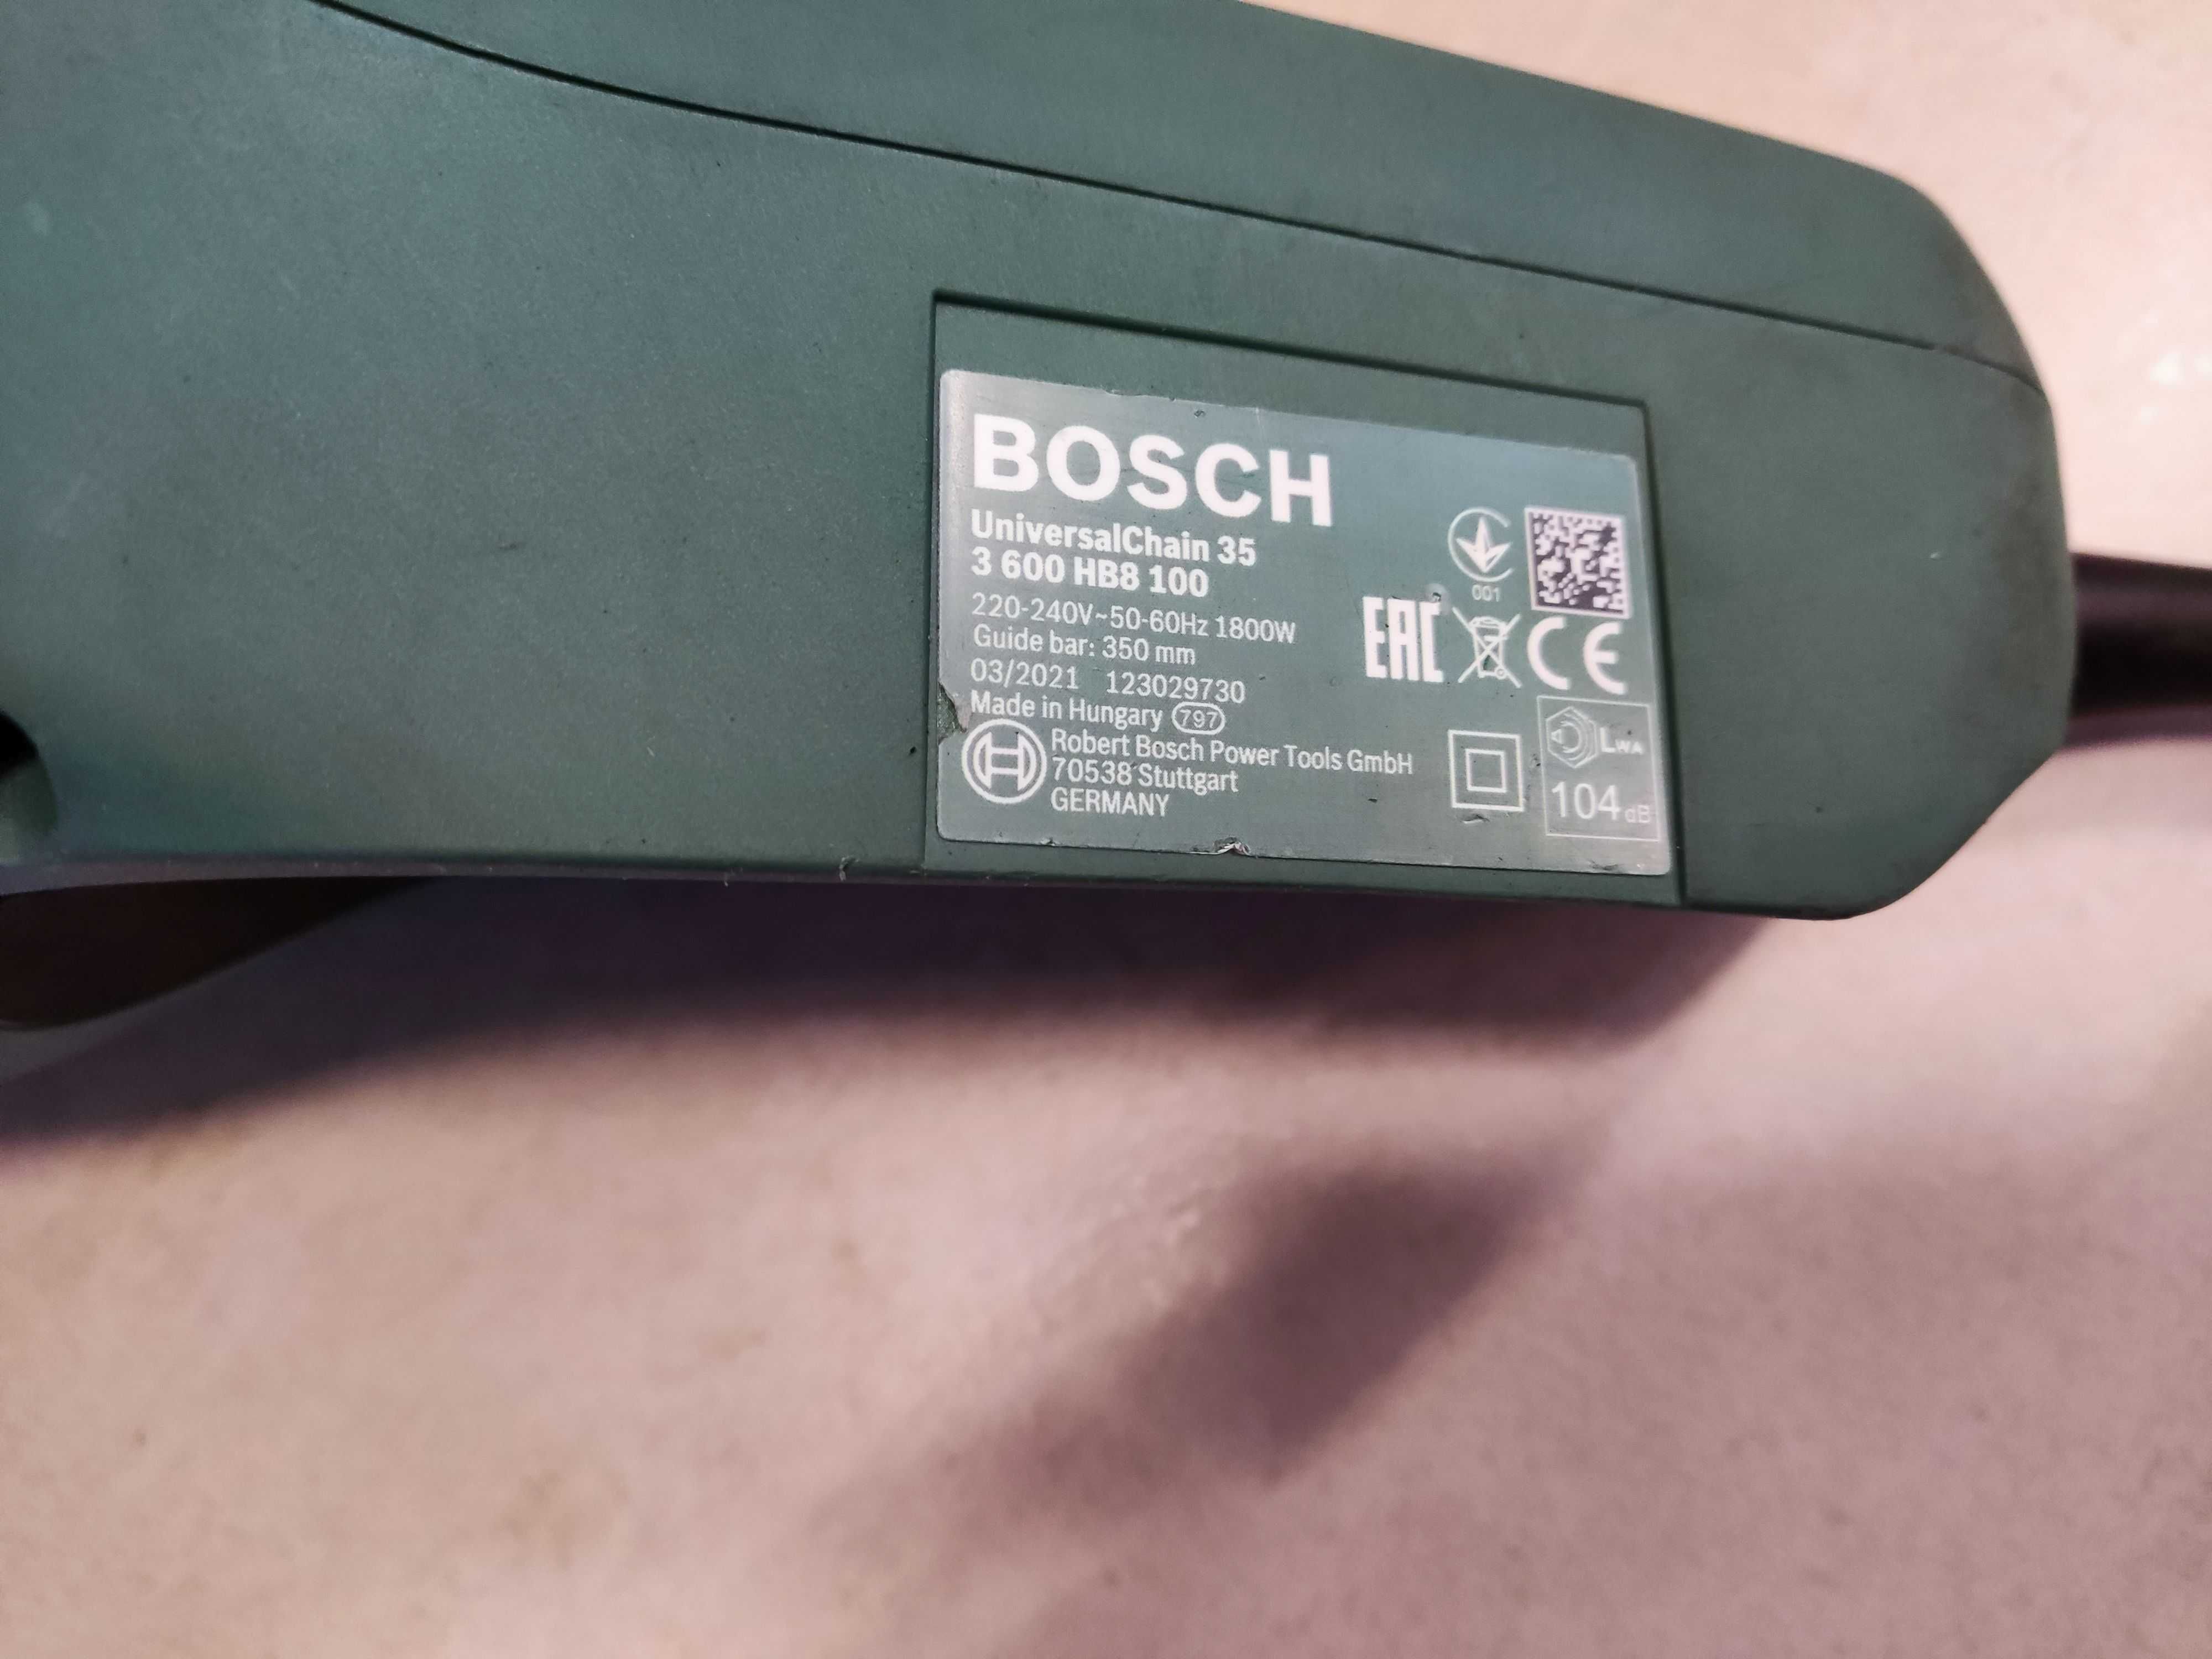 Piła elektryczna Bosch Universal Chain 35